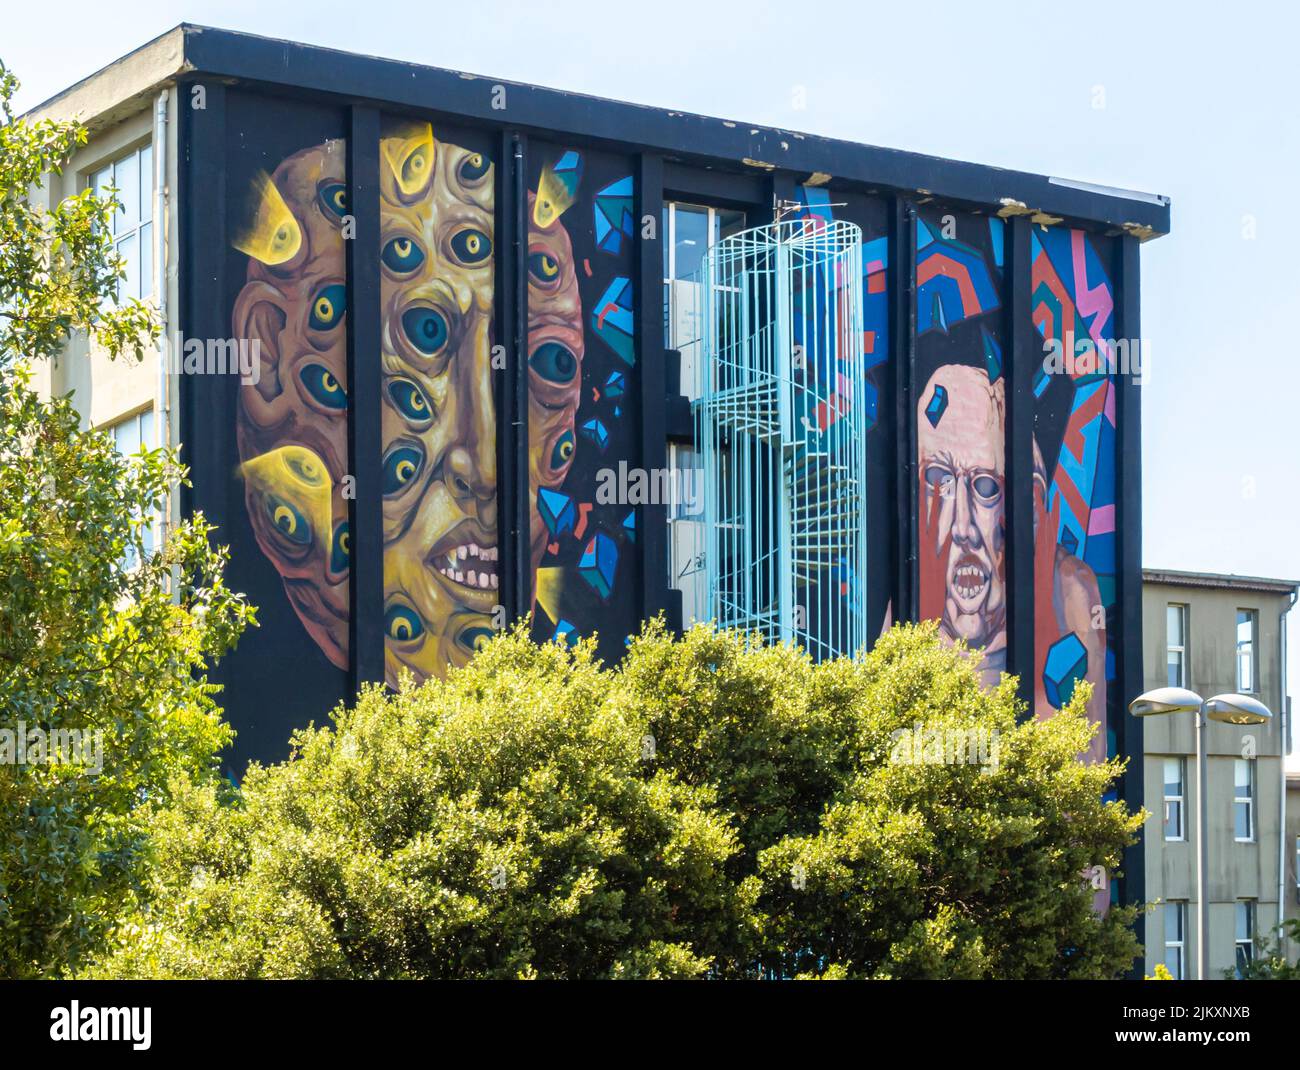 Arte callejero, mural de Canavar en el edificio de la Universidad de Marmara Kadiköy distrito de Estambul, Turquía Foto de stock